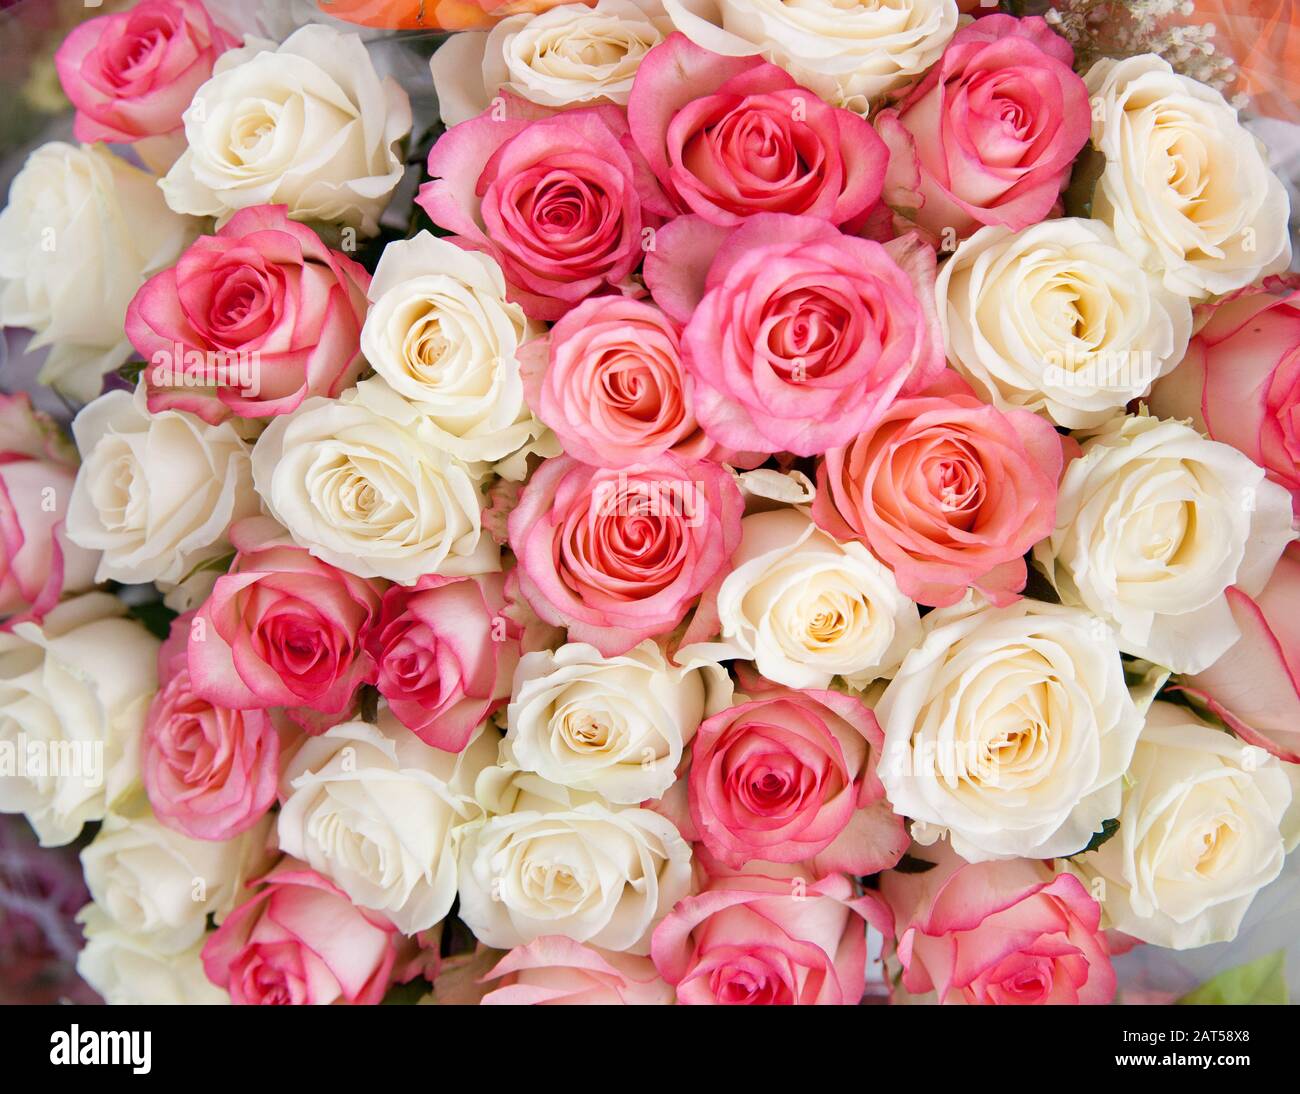 Hãy xem những bông hoa trắng và hồng này để cảm nhận sự tinh tế và nữ tính của nó. Hình ảnh này sẽ khơi gợi trong bạn một cảm giác yêu đời và sự tự hào về vẻ đẹp tự nhiên của hoa.